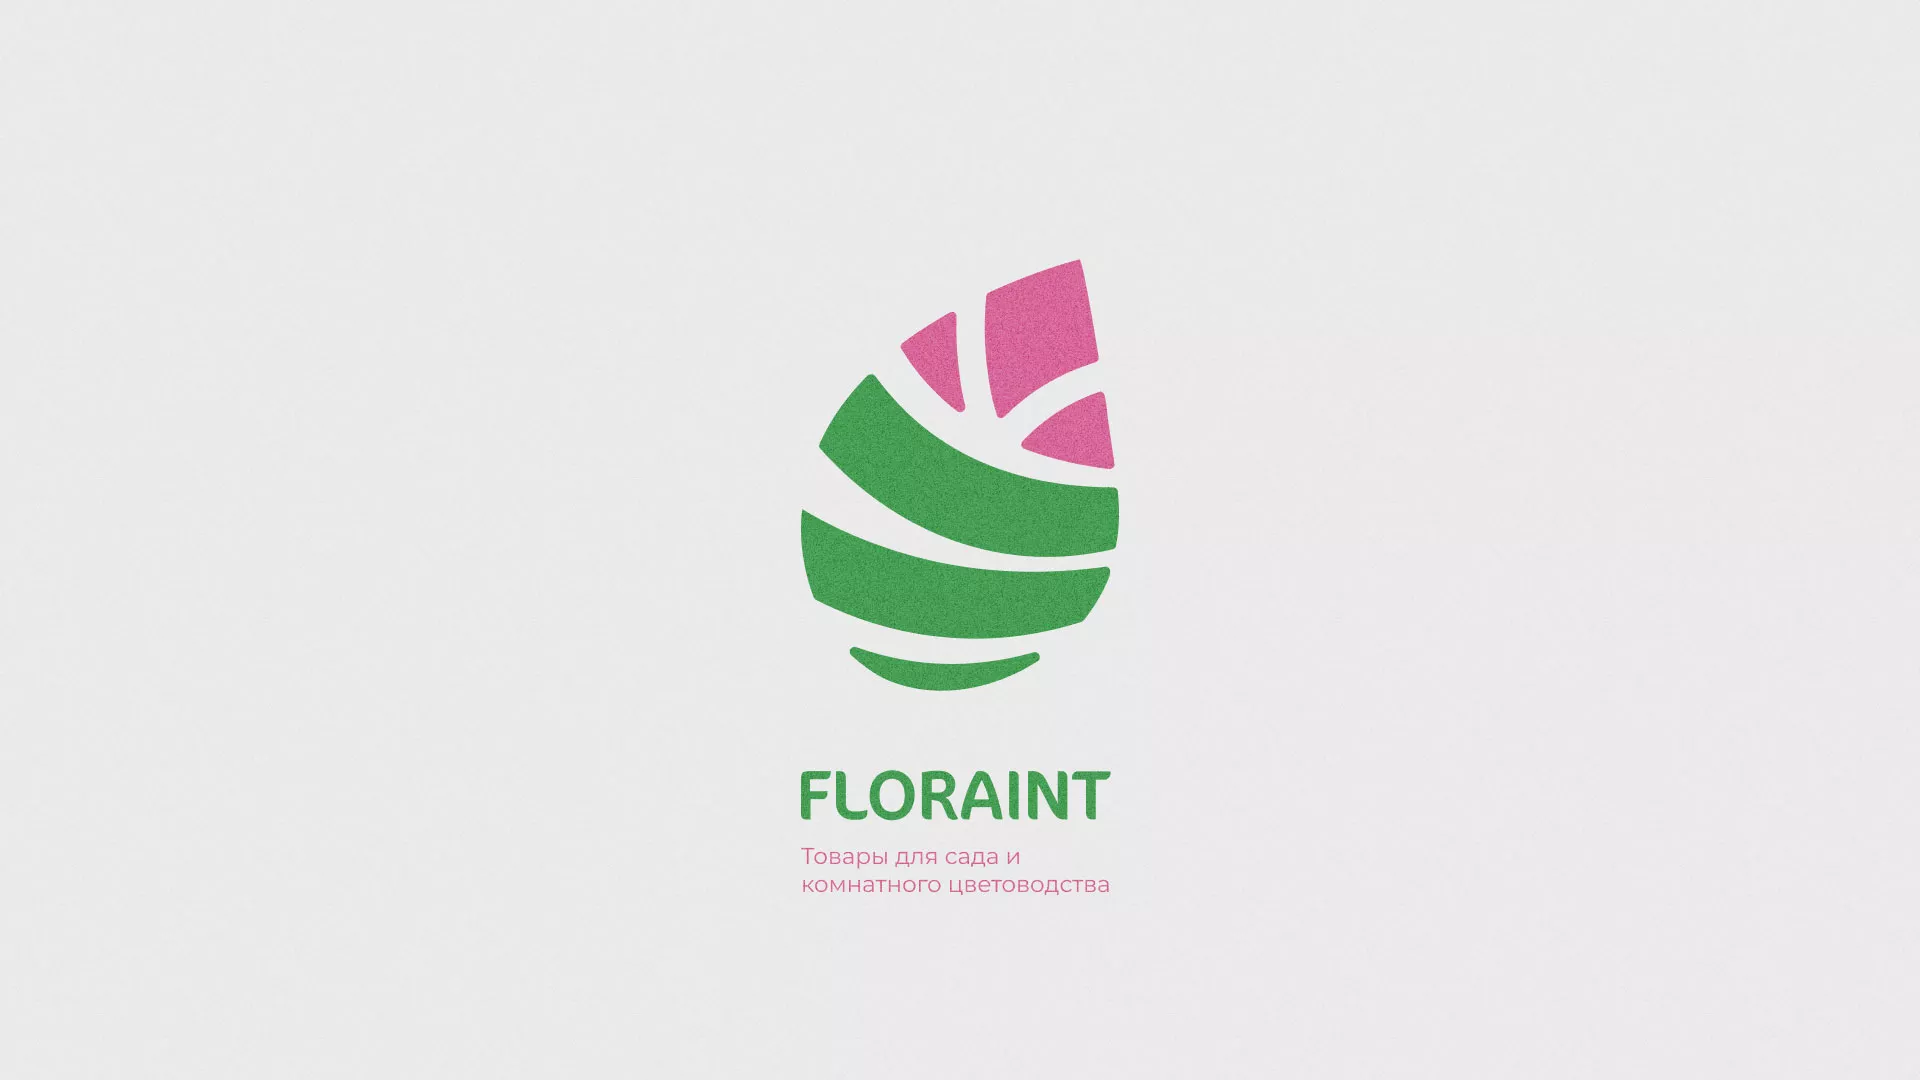 Разработка оформления профиля Instagram для магазина «Floraint» в Данилове